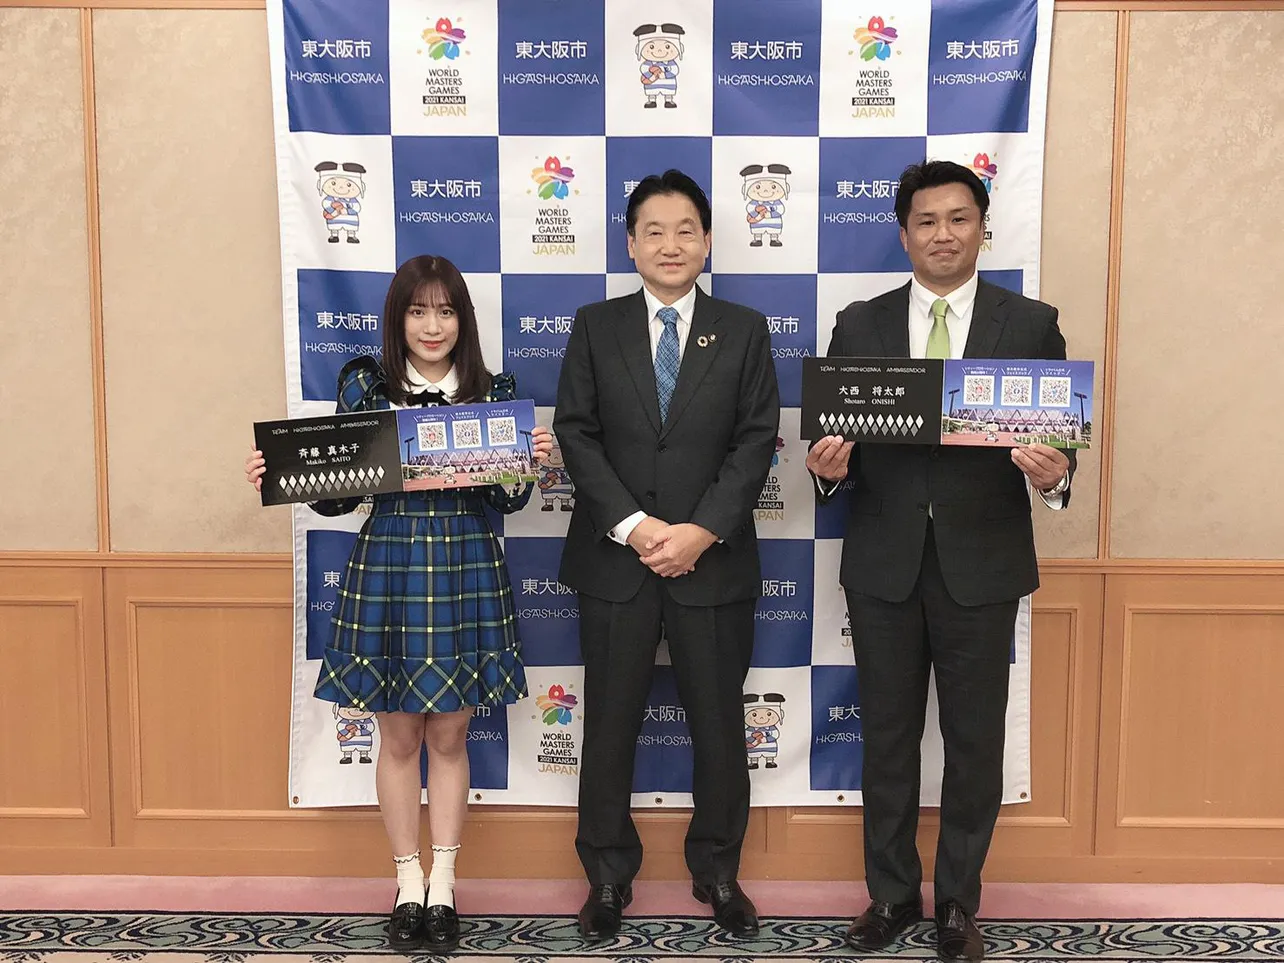 (左から)斉藤真木子、野田義和市長、大西将太郎氏